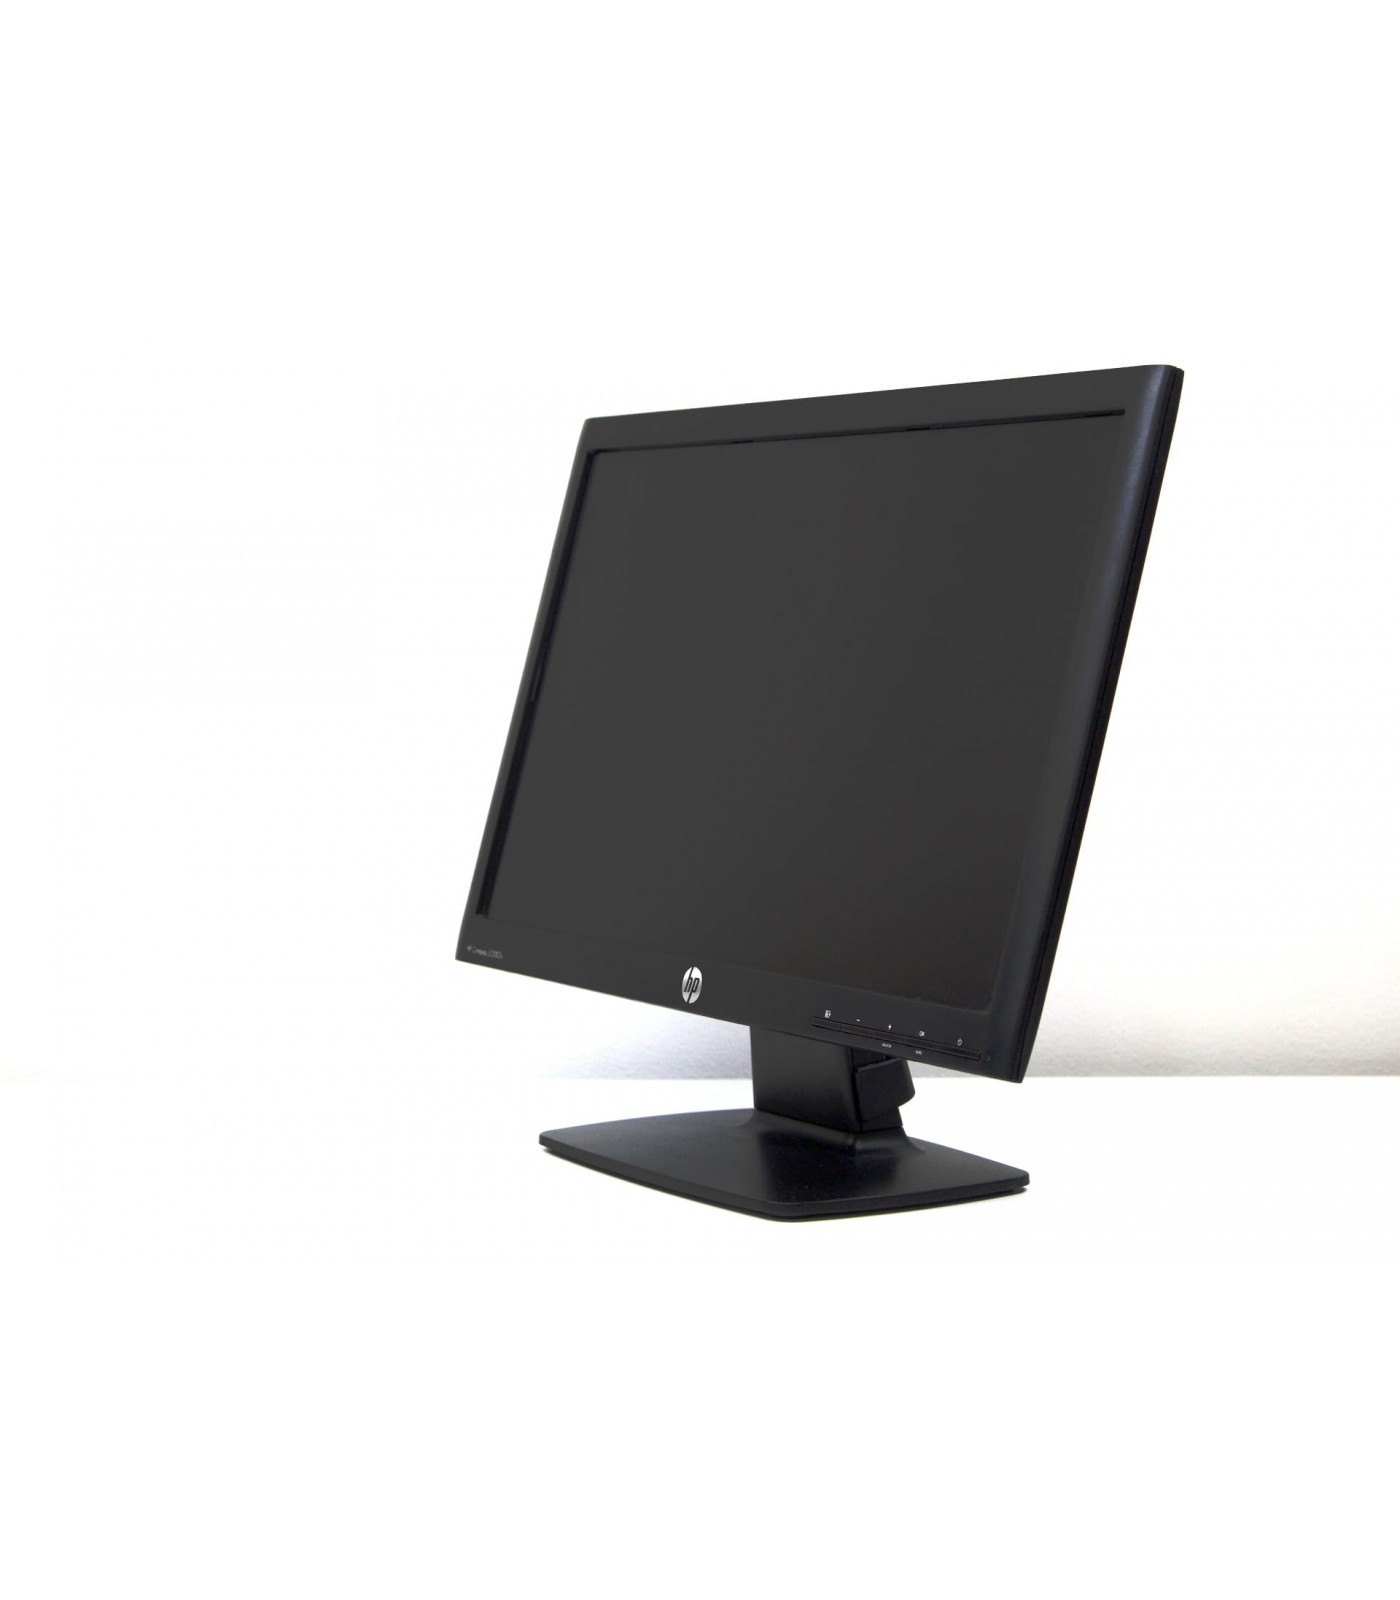 Poleasingowy monitor HP Le2002x o rozdzielczości HD+  przekątnej 20 cali